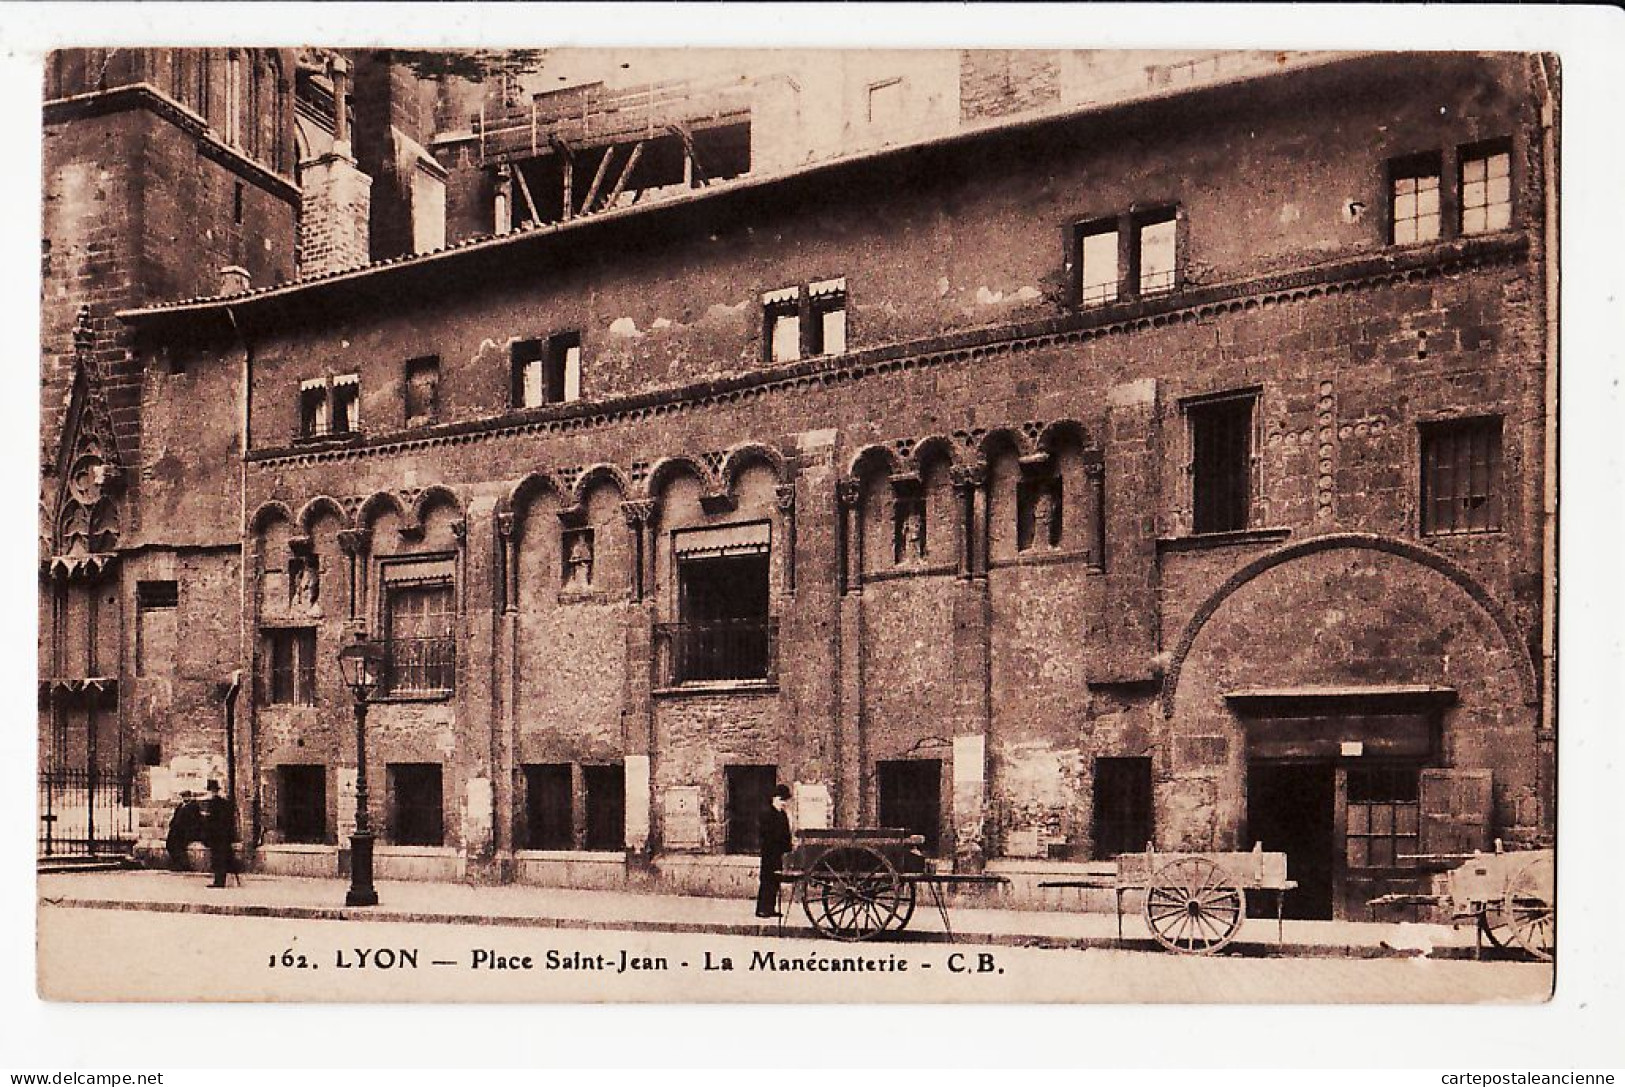 15753 ● LYON V MANECANTERIE Charette Vendeur Place Cathedrale SAINT-JEAN 1938 à MAGNIEN Rue St Hélène - Lyon 5